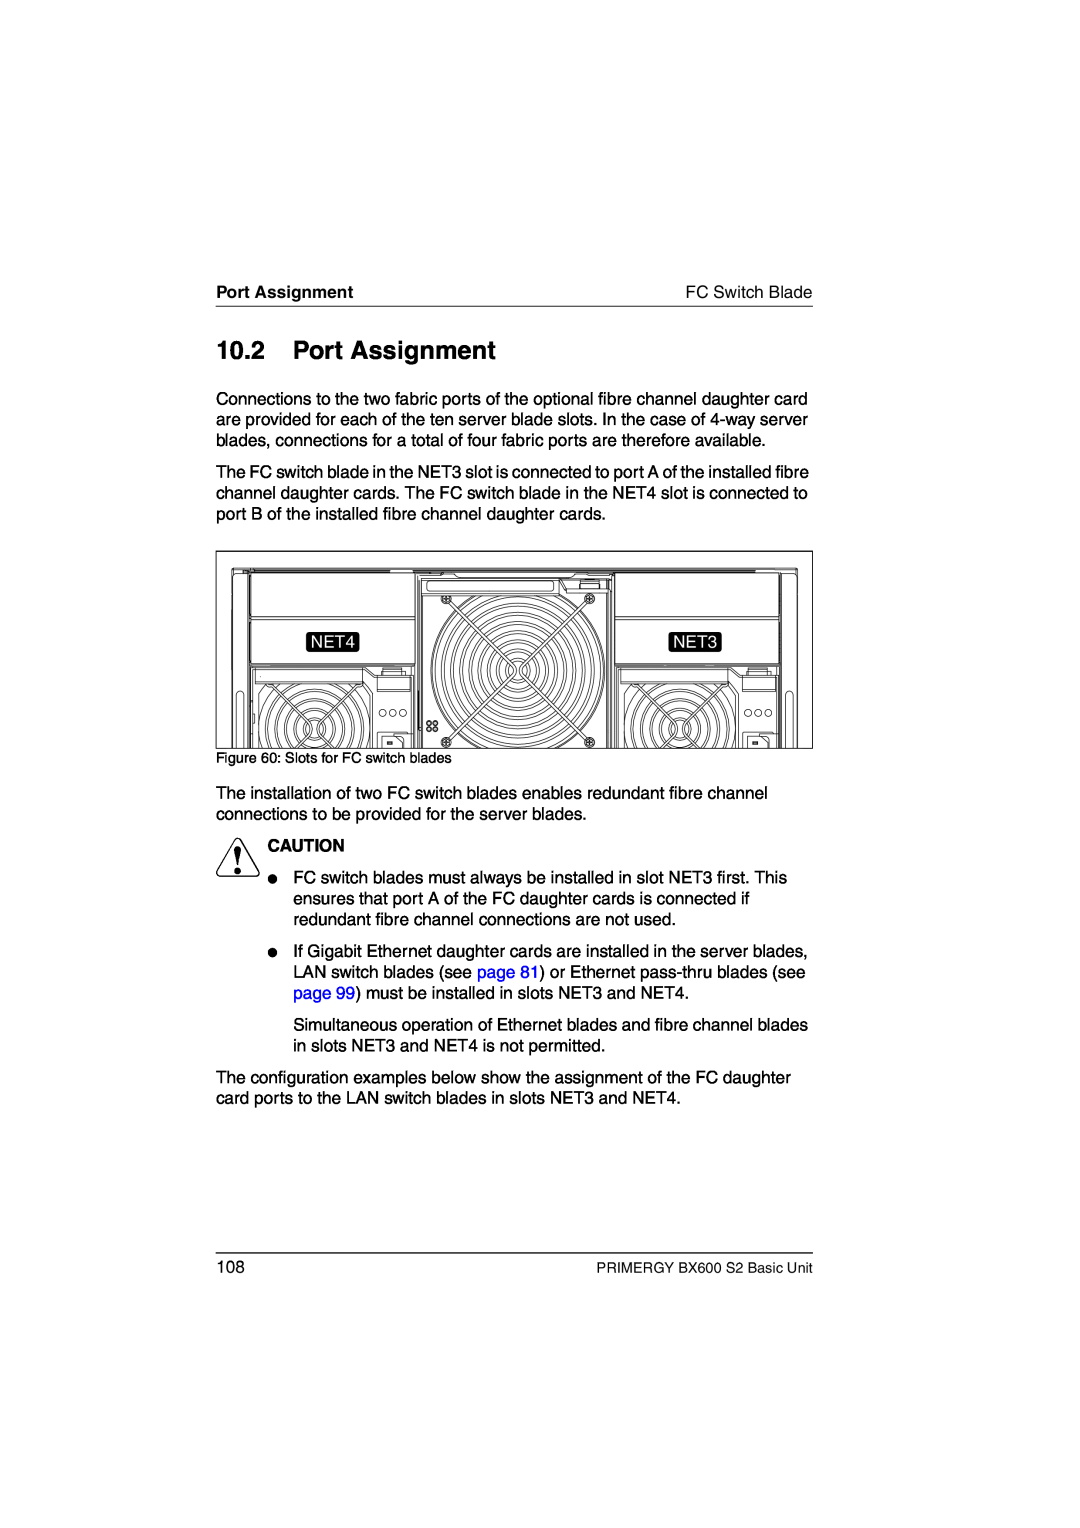 Fujitsu BX600 S2 manual Port Assignment, NET4, NET3, V Caution 